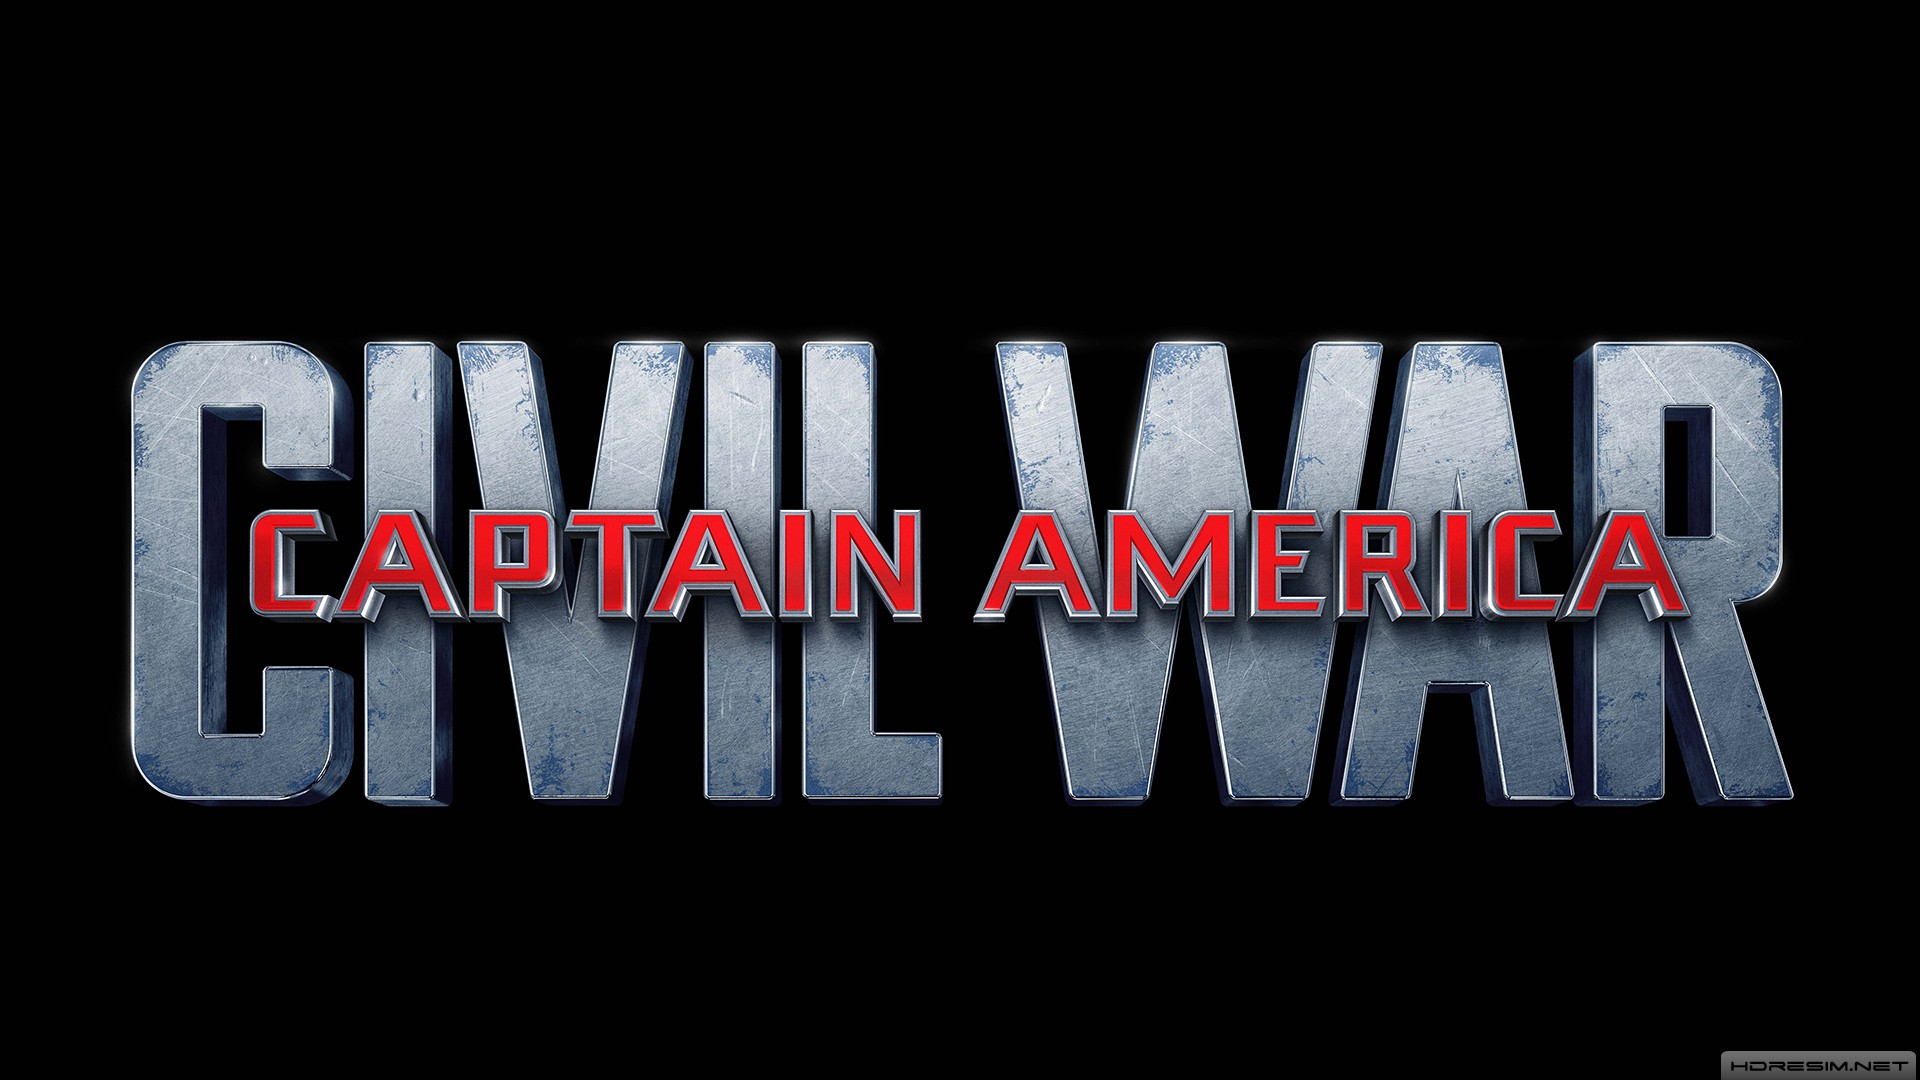 kaptan amerika,kahramanların savaşı,film,2016